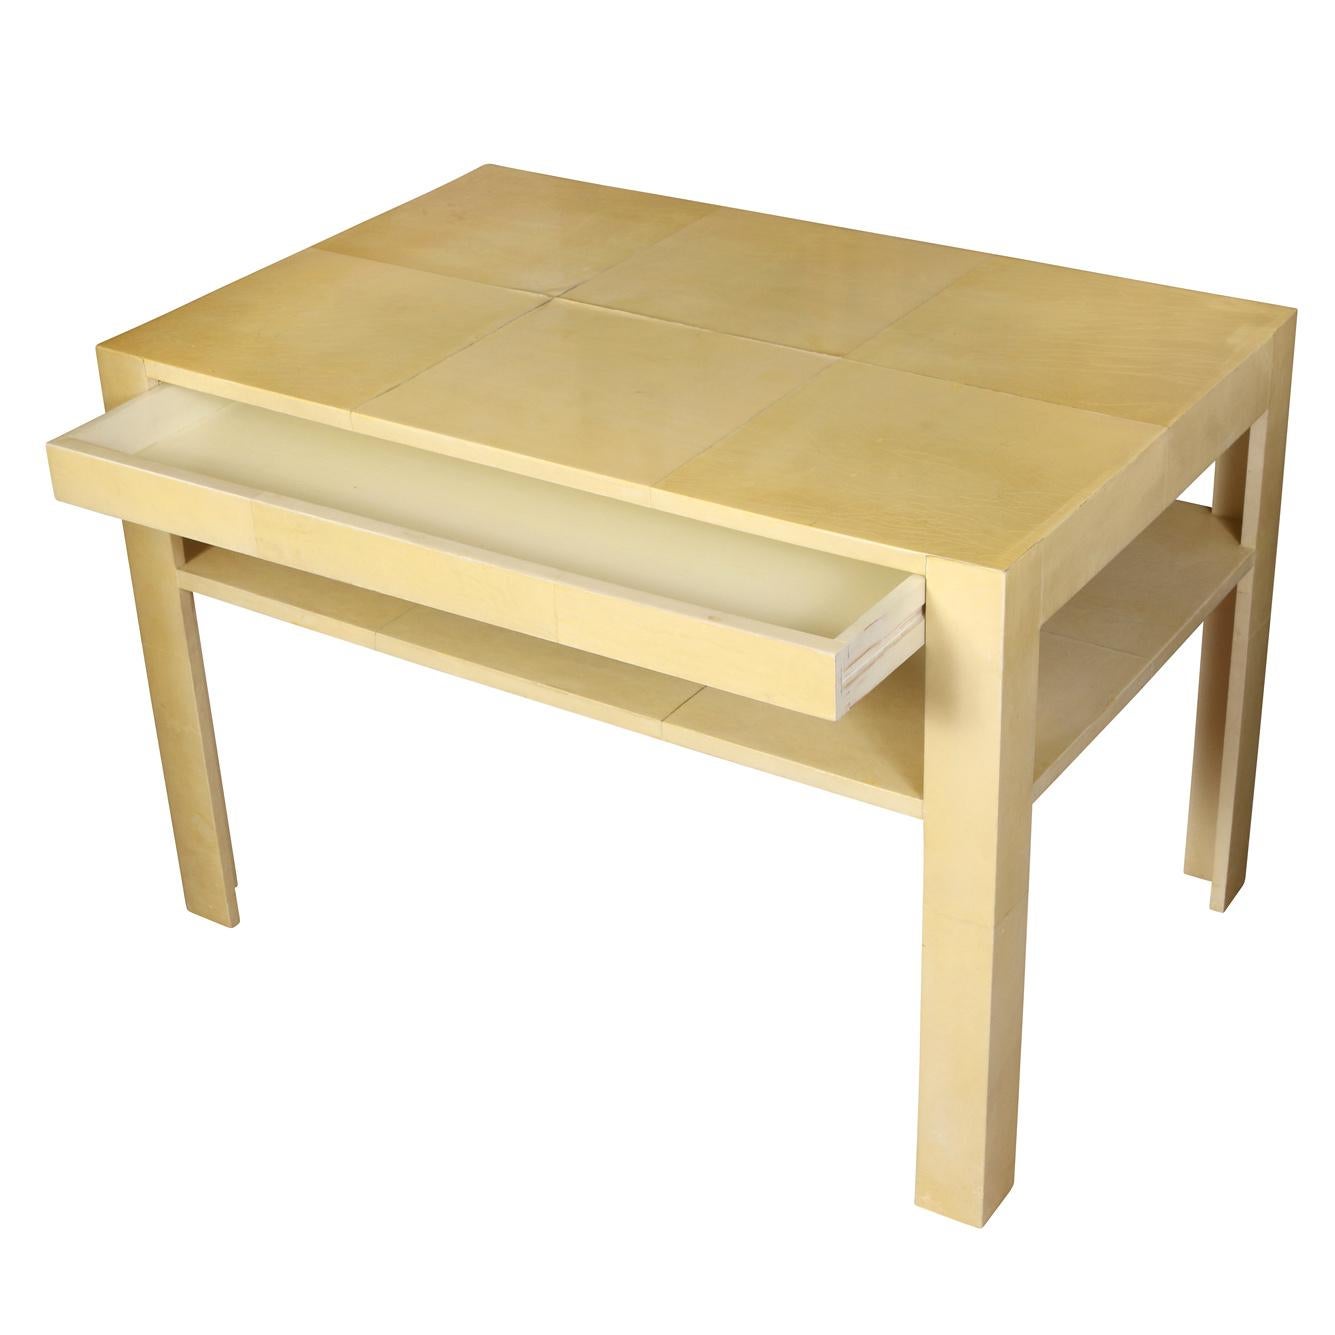 Table d'appoint vintage en peau de chèvre de style Karl Springer avec un seul tiroir et une étagère. Une table chic de style Mid-Century Modern de couleur jaune pâle